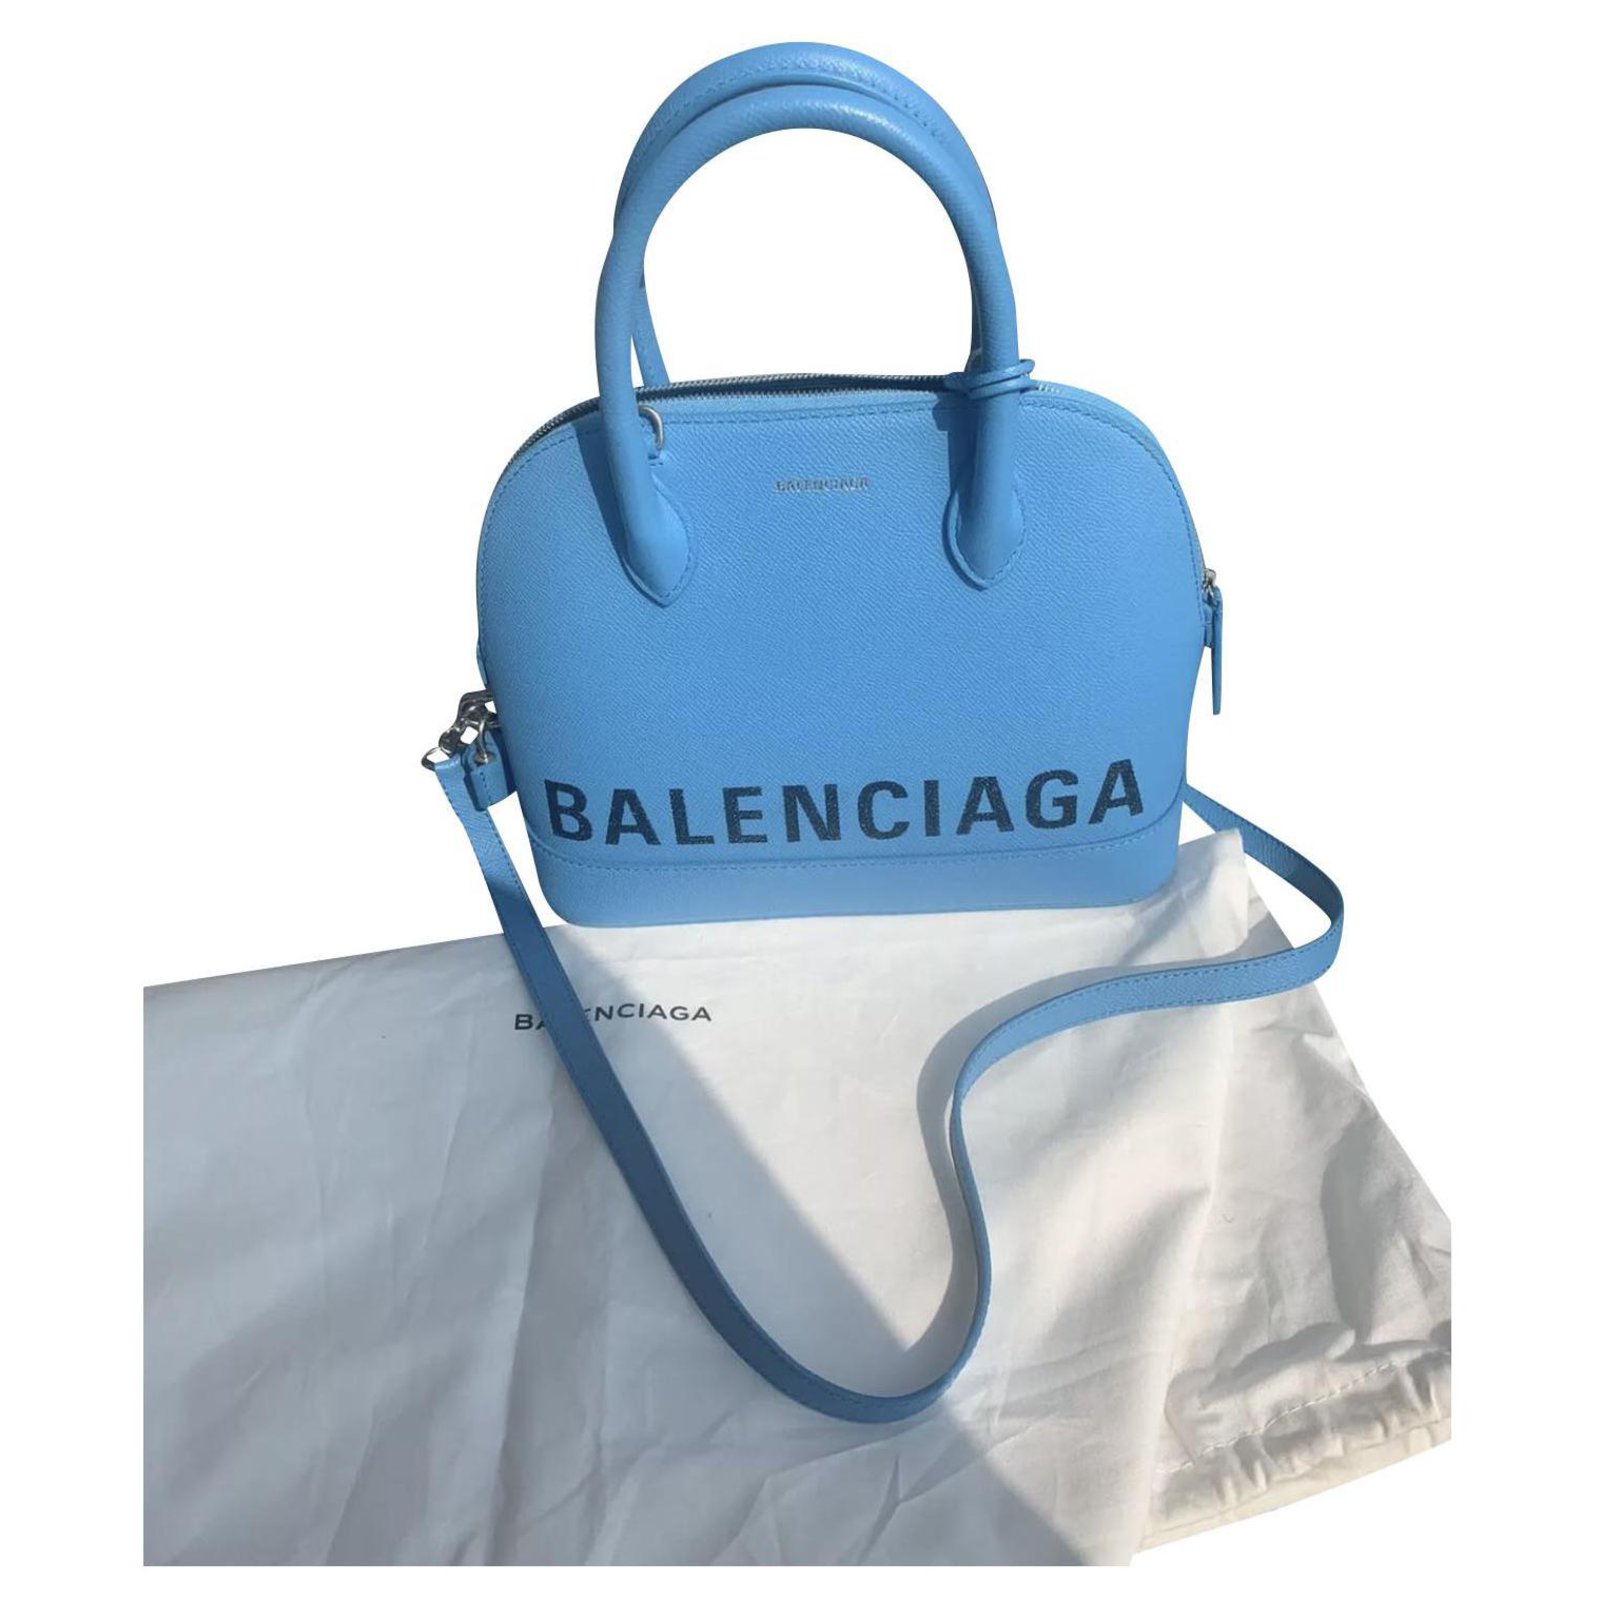 BalenciagaBalenciaga Metallic Edge City Mini Bag Light Blue  WEAR